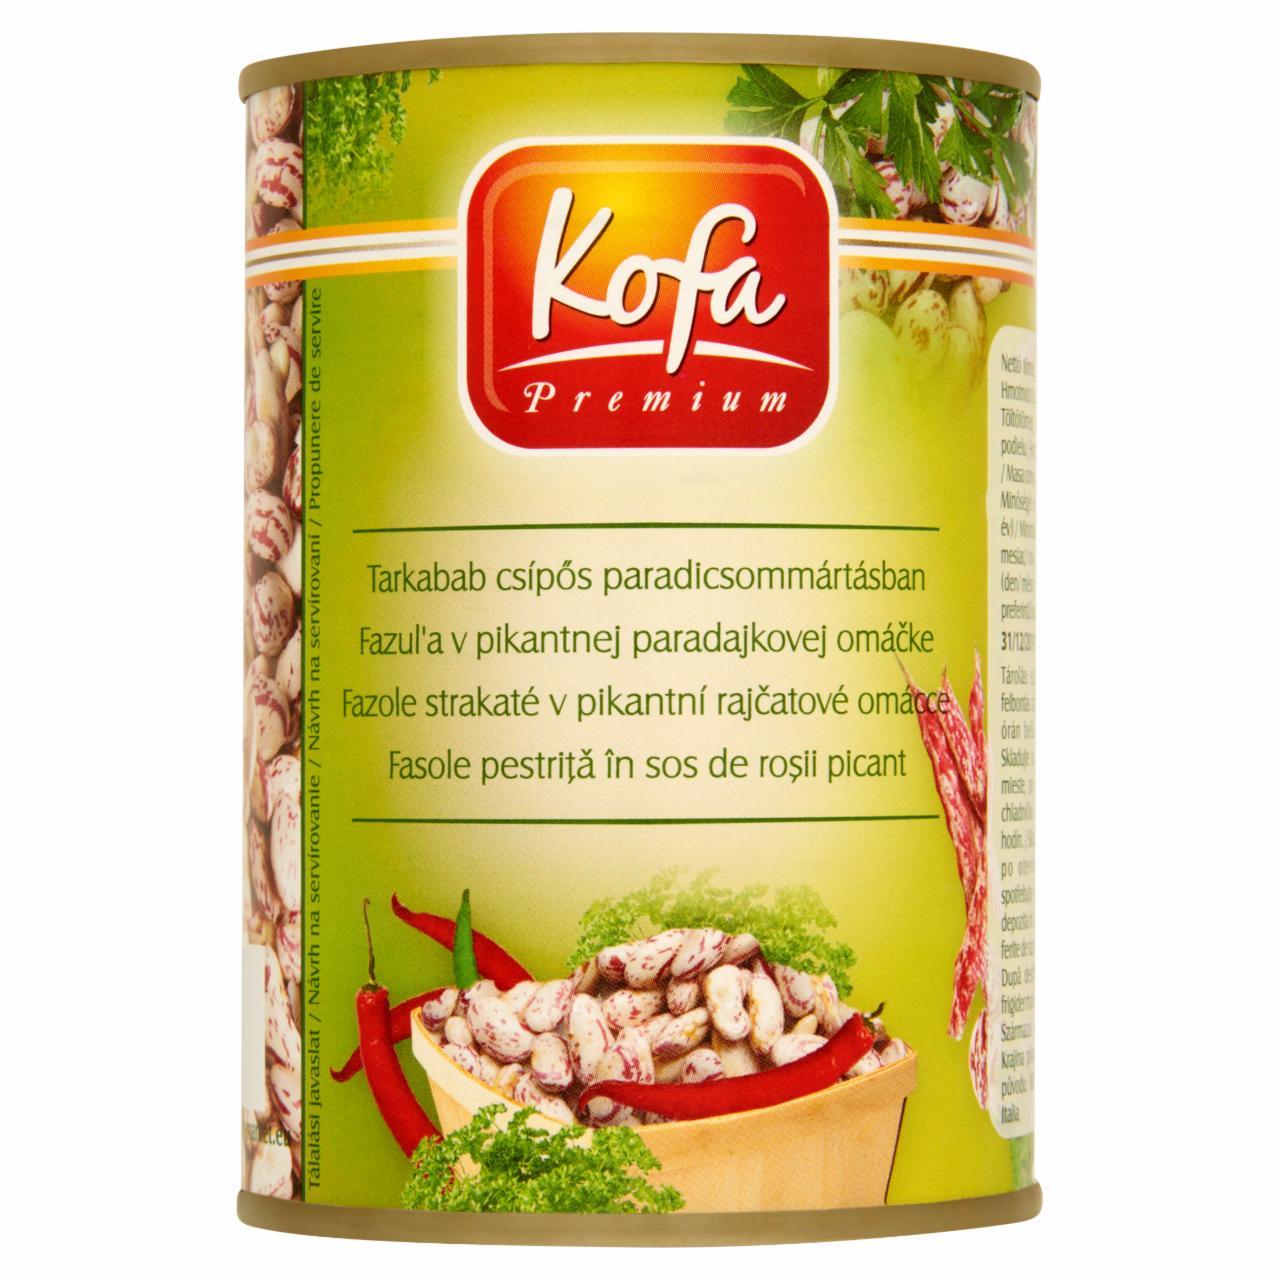 Képek - Kofa Premium tarkabab csípős paradicsommártásban 400 g